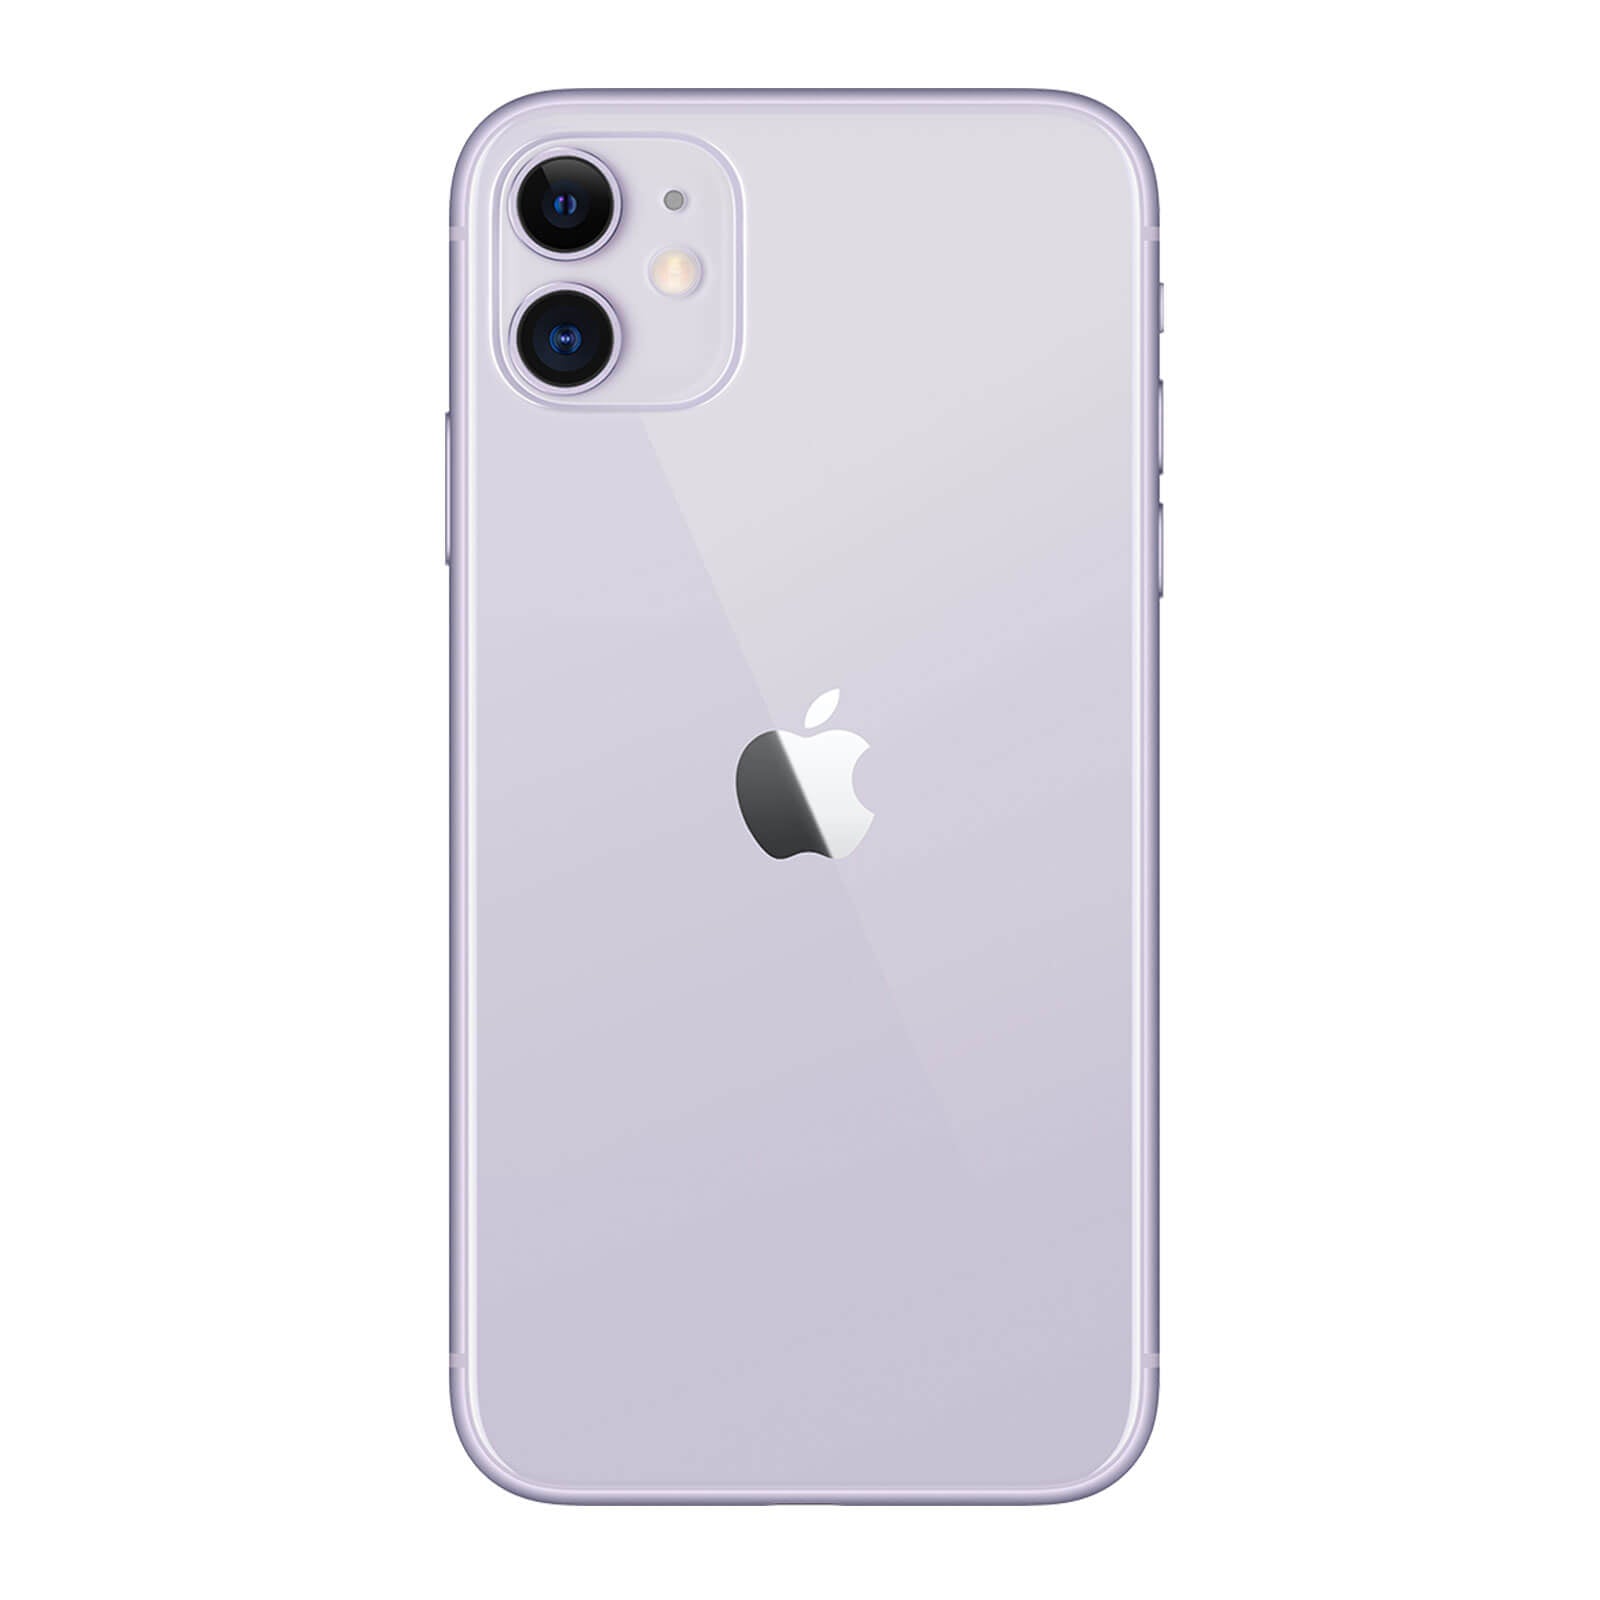 Apple iPhone 11 64GB Purple Very Good - Unlocked - Unlocked